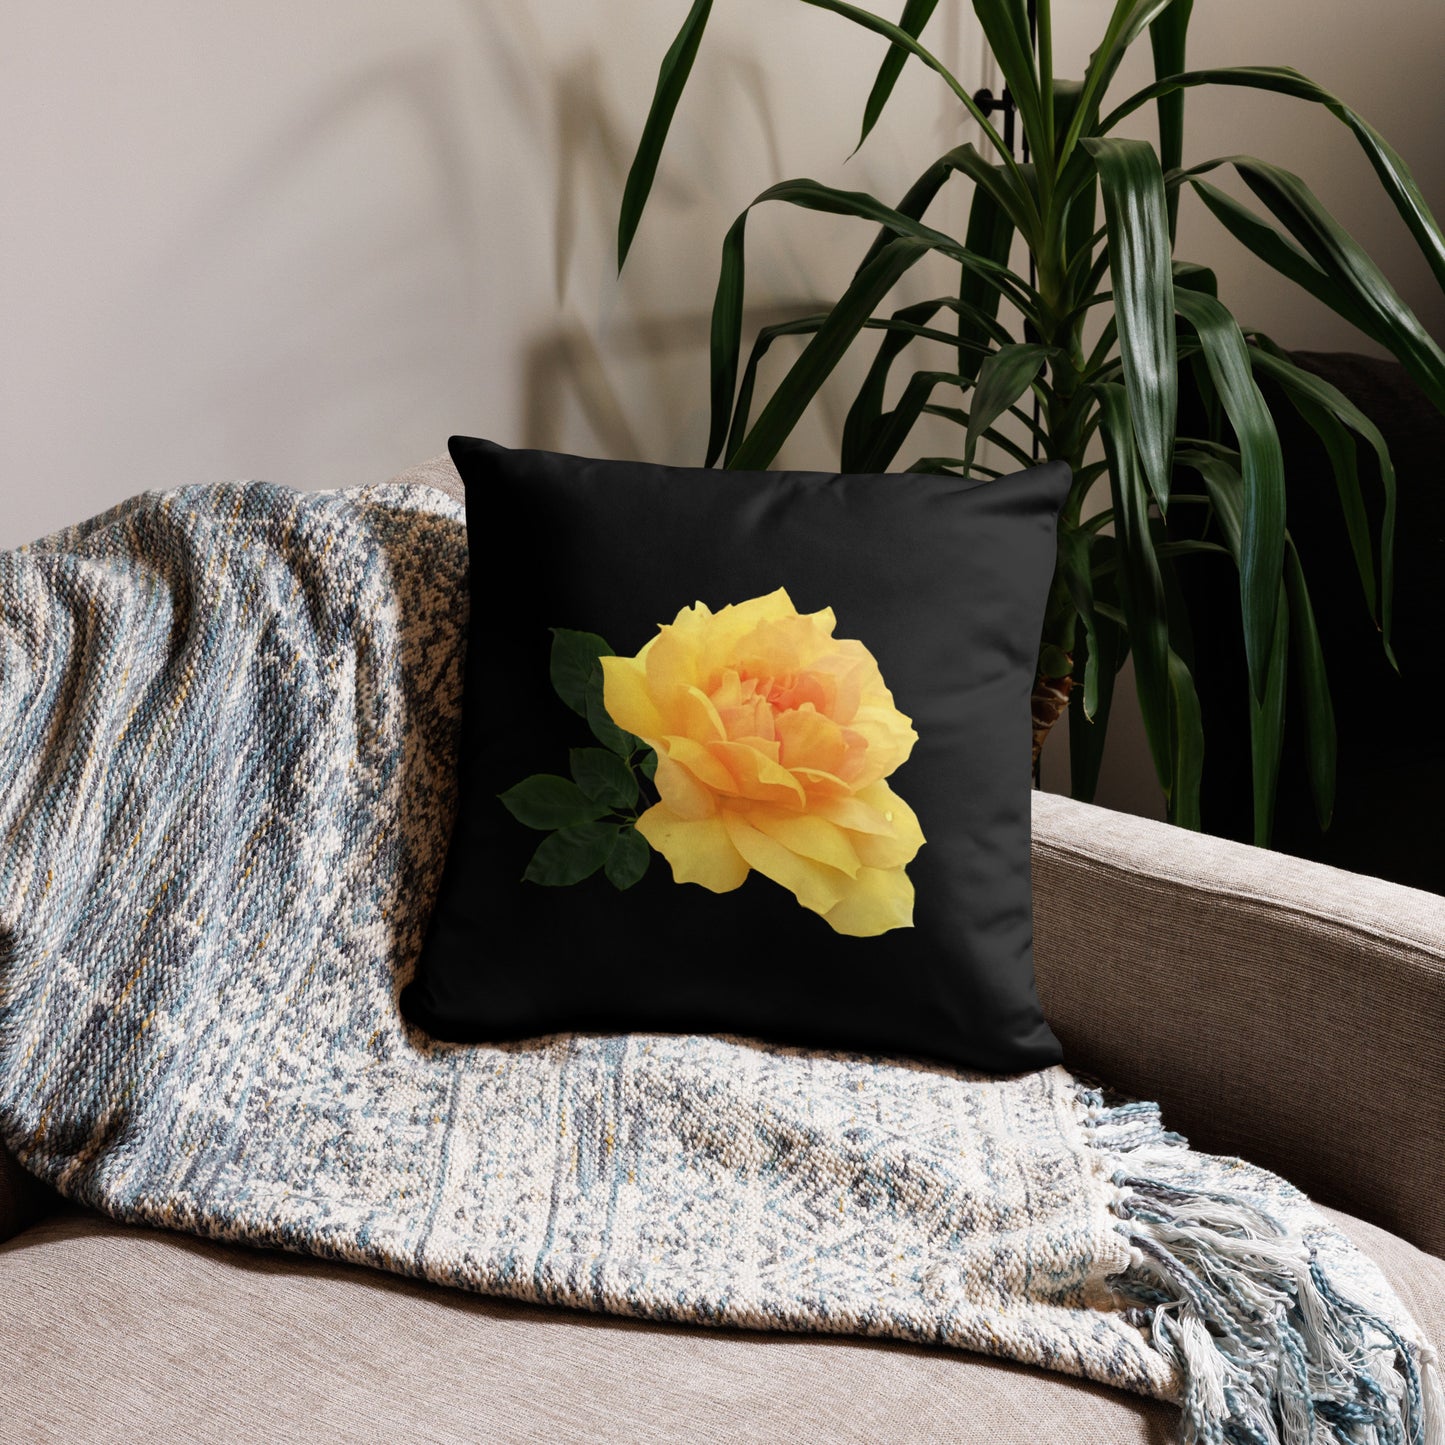 "Yellow Flower" Soft Pillow